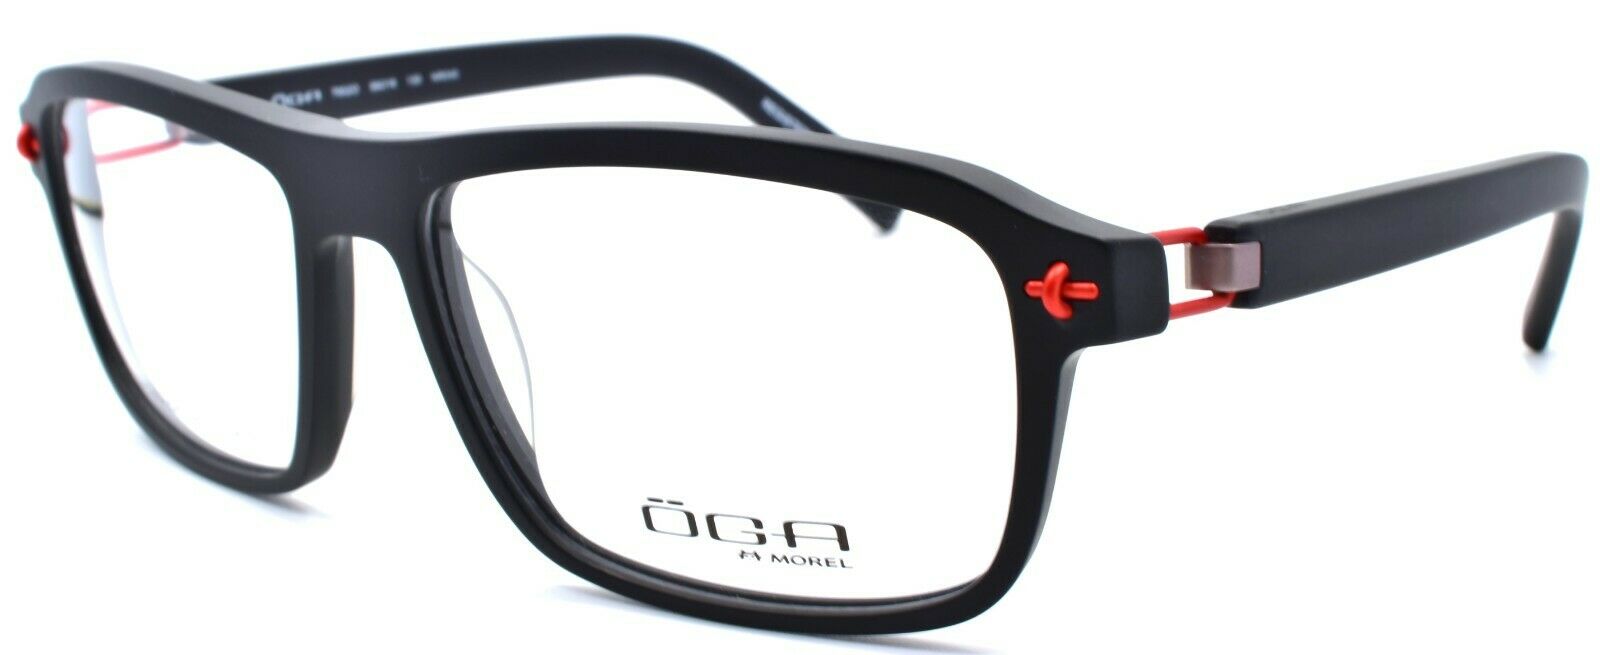 1-OGA by Morel 7952O NR040 Men's Eyeglasses Frames 58-16-130 Matte Black-3604770882681-IKSpecs